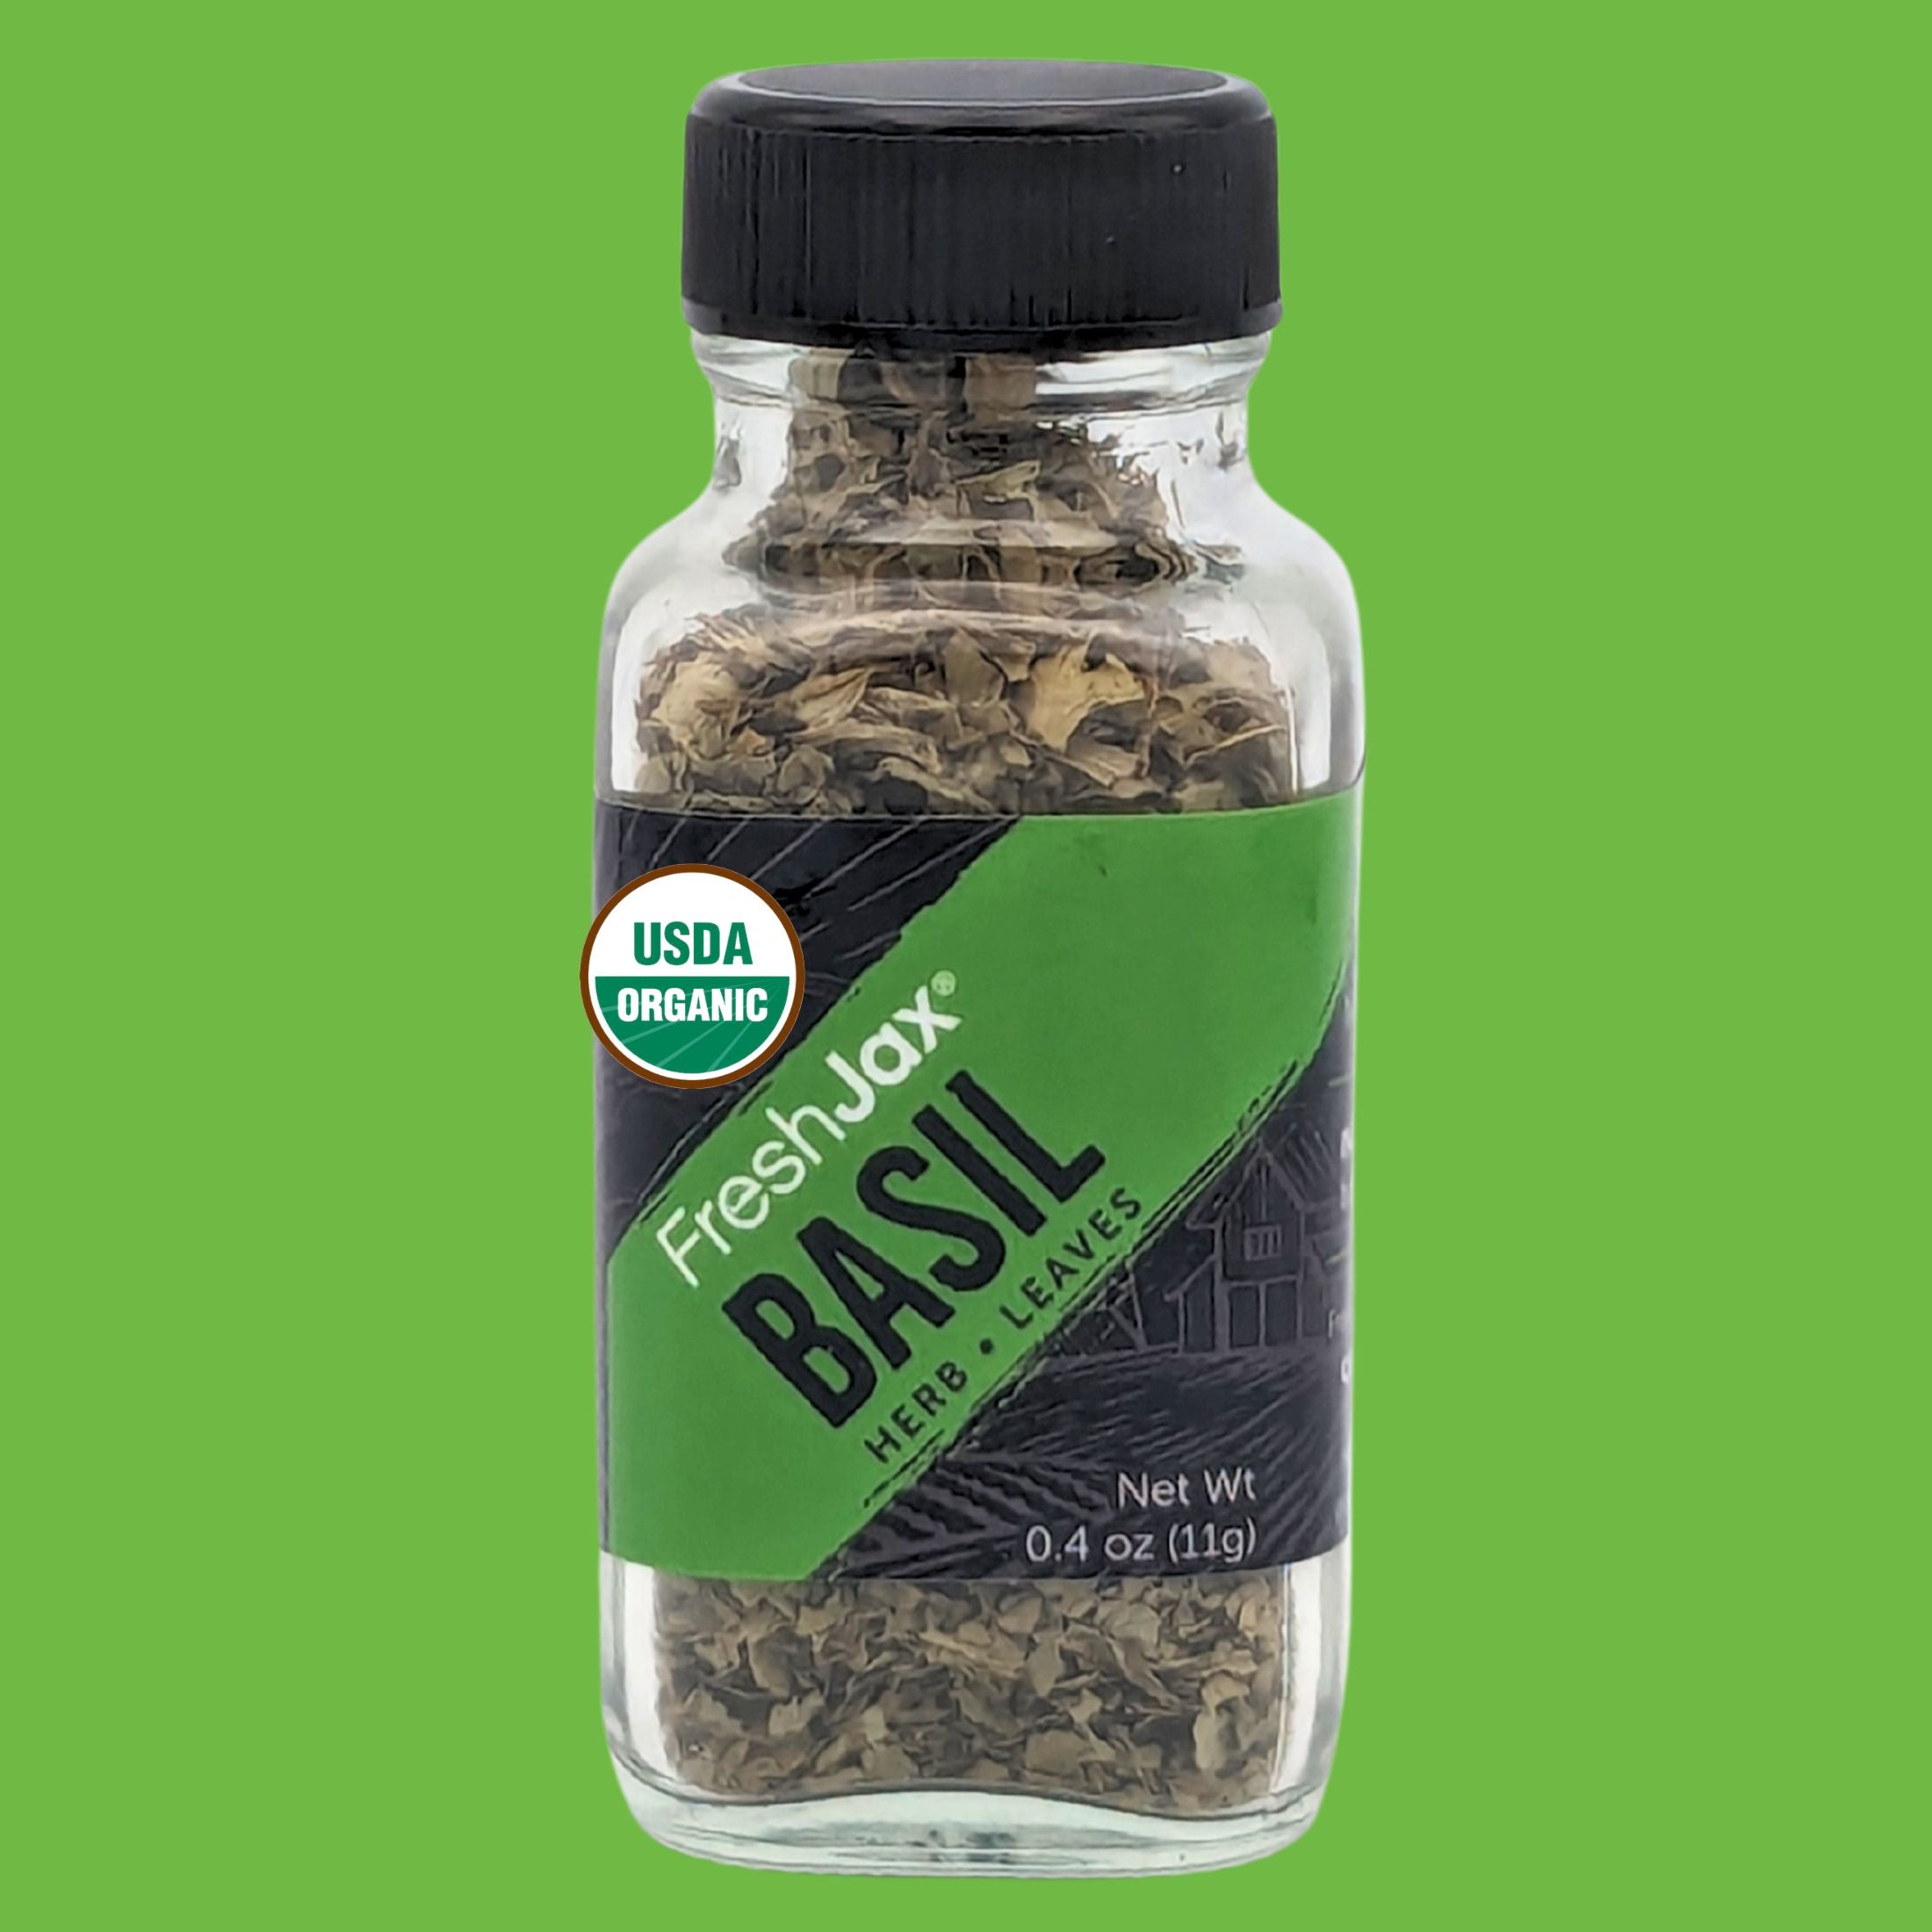 FreshJax Organic Basil Leaves - Sampler Size